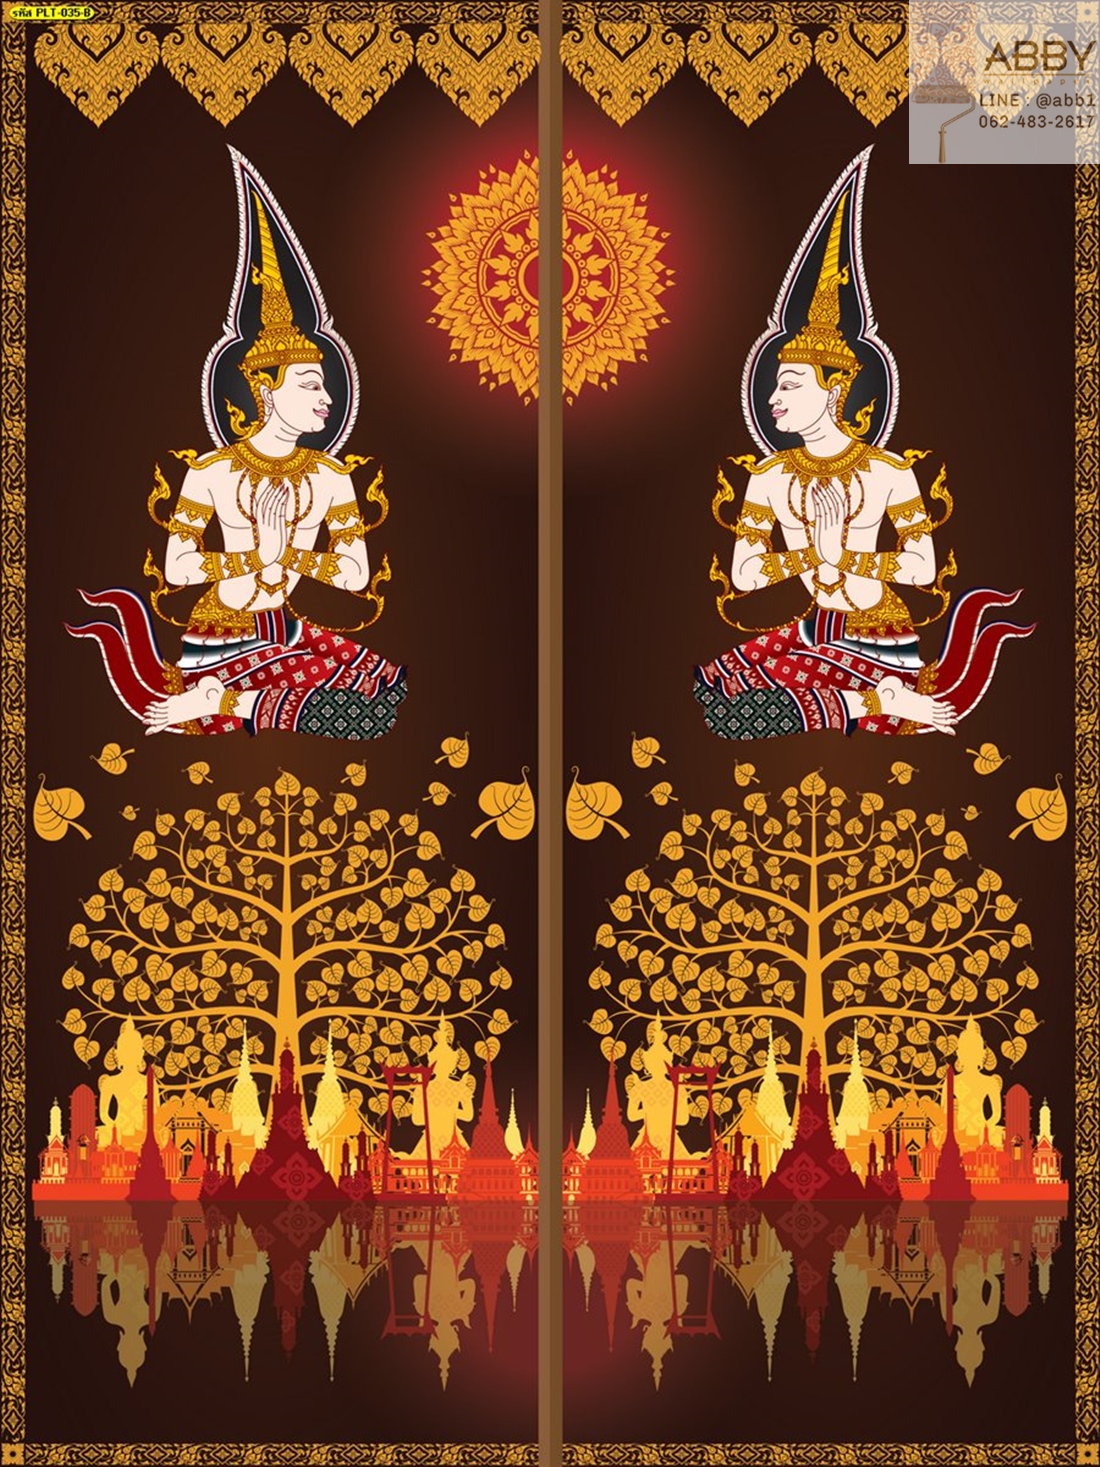 ภาพประตูลายไทยเทพพนมกับต้นโพธิ์ทองสวยๆ